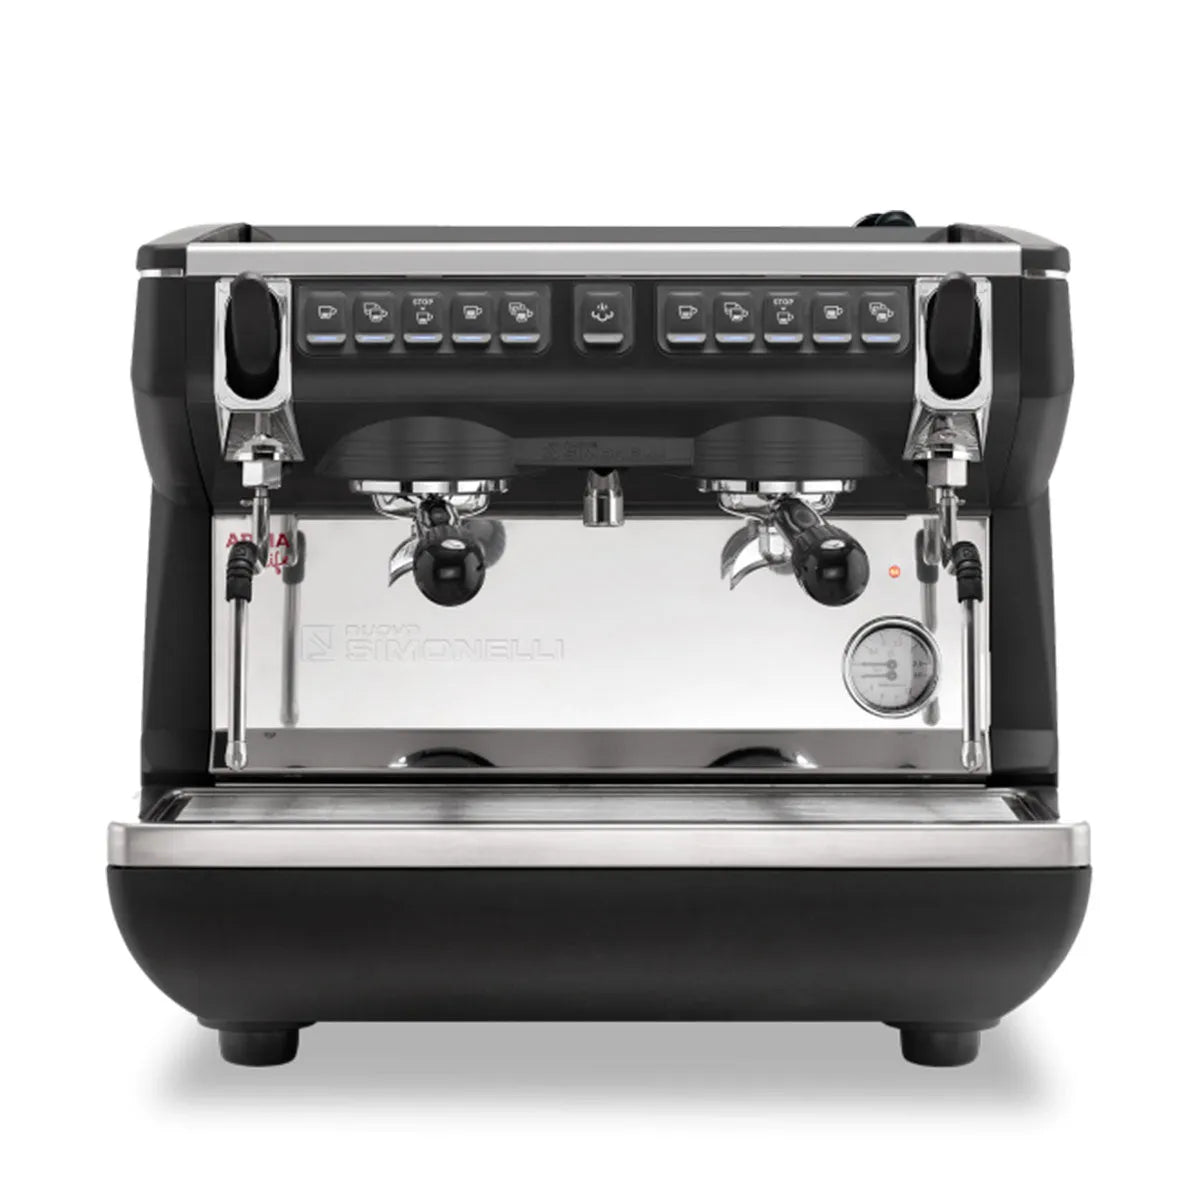 Nuova Simonelli Appia Life Compact 2 Group Volumetric, Black Espresso machine Professional Espresso Equipment 